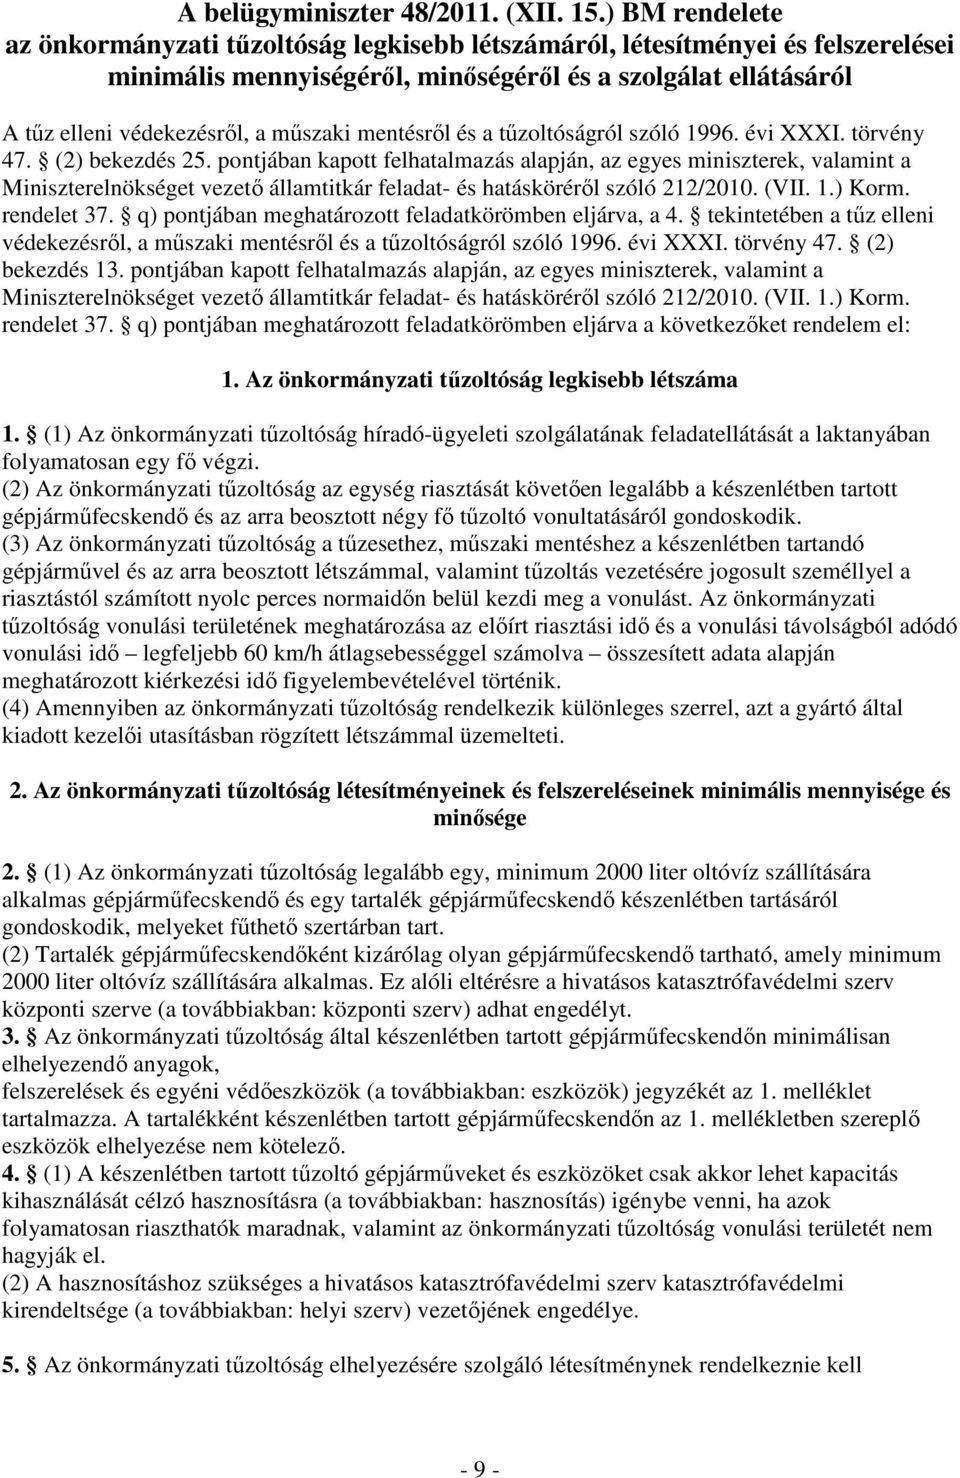 mentésrıl és a tőzoltóságról szóló 1996. évi XXXI. törvény 47. (2) bekezdés 25.